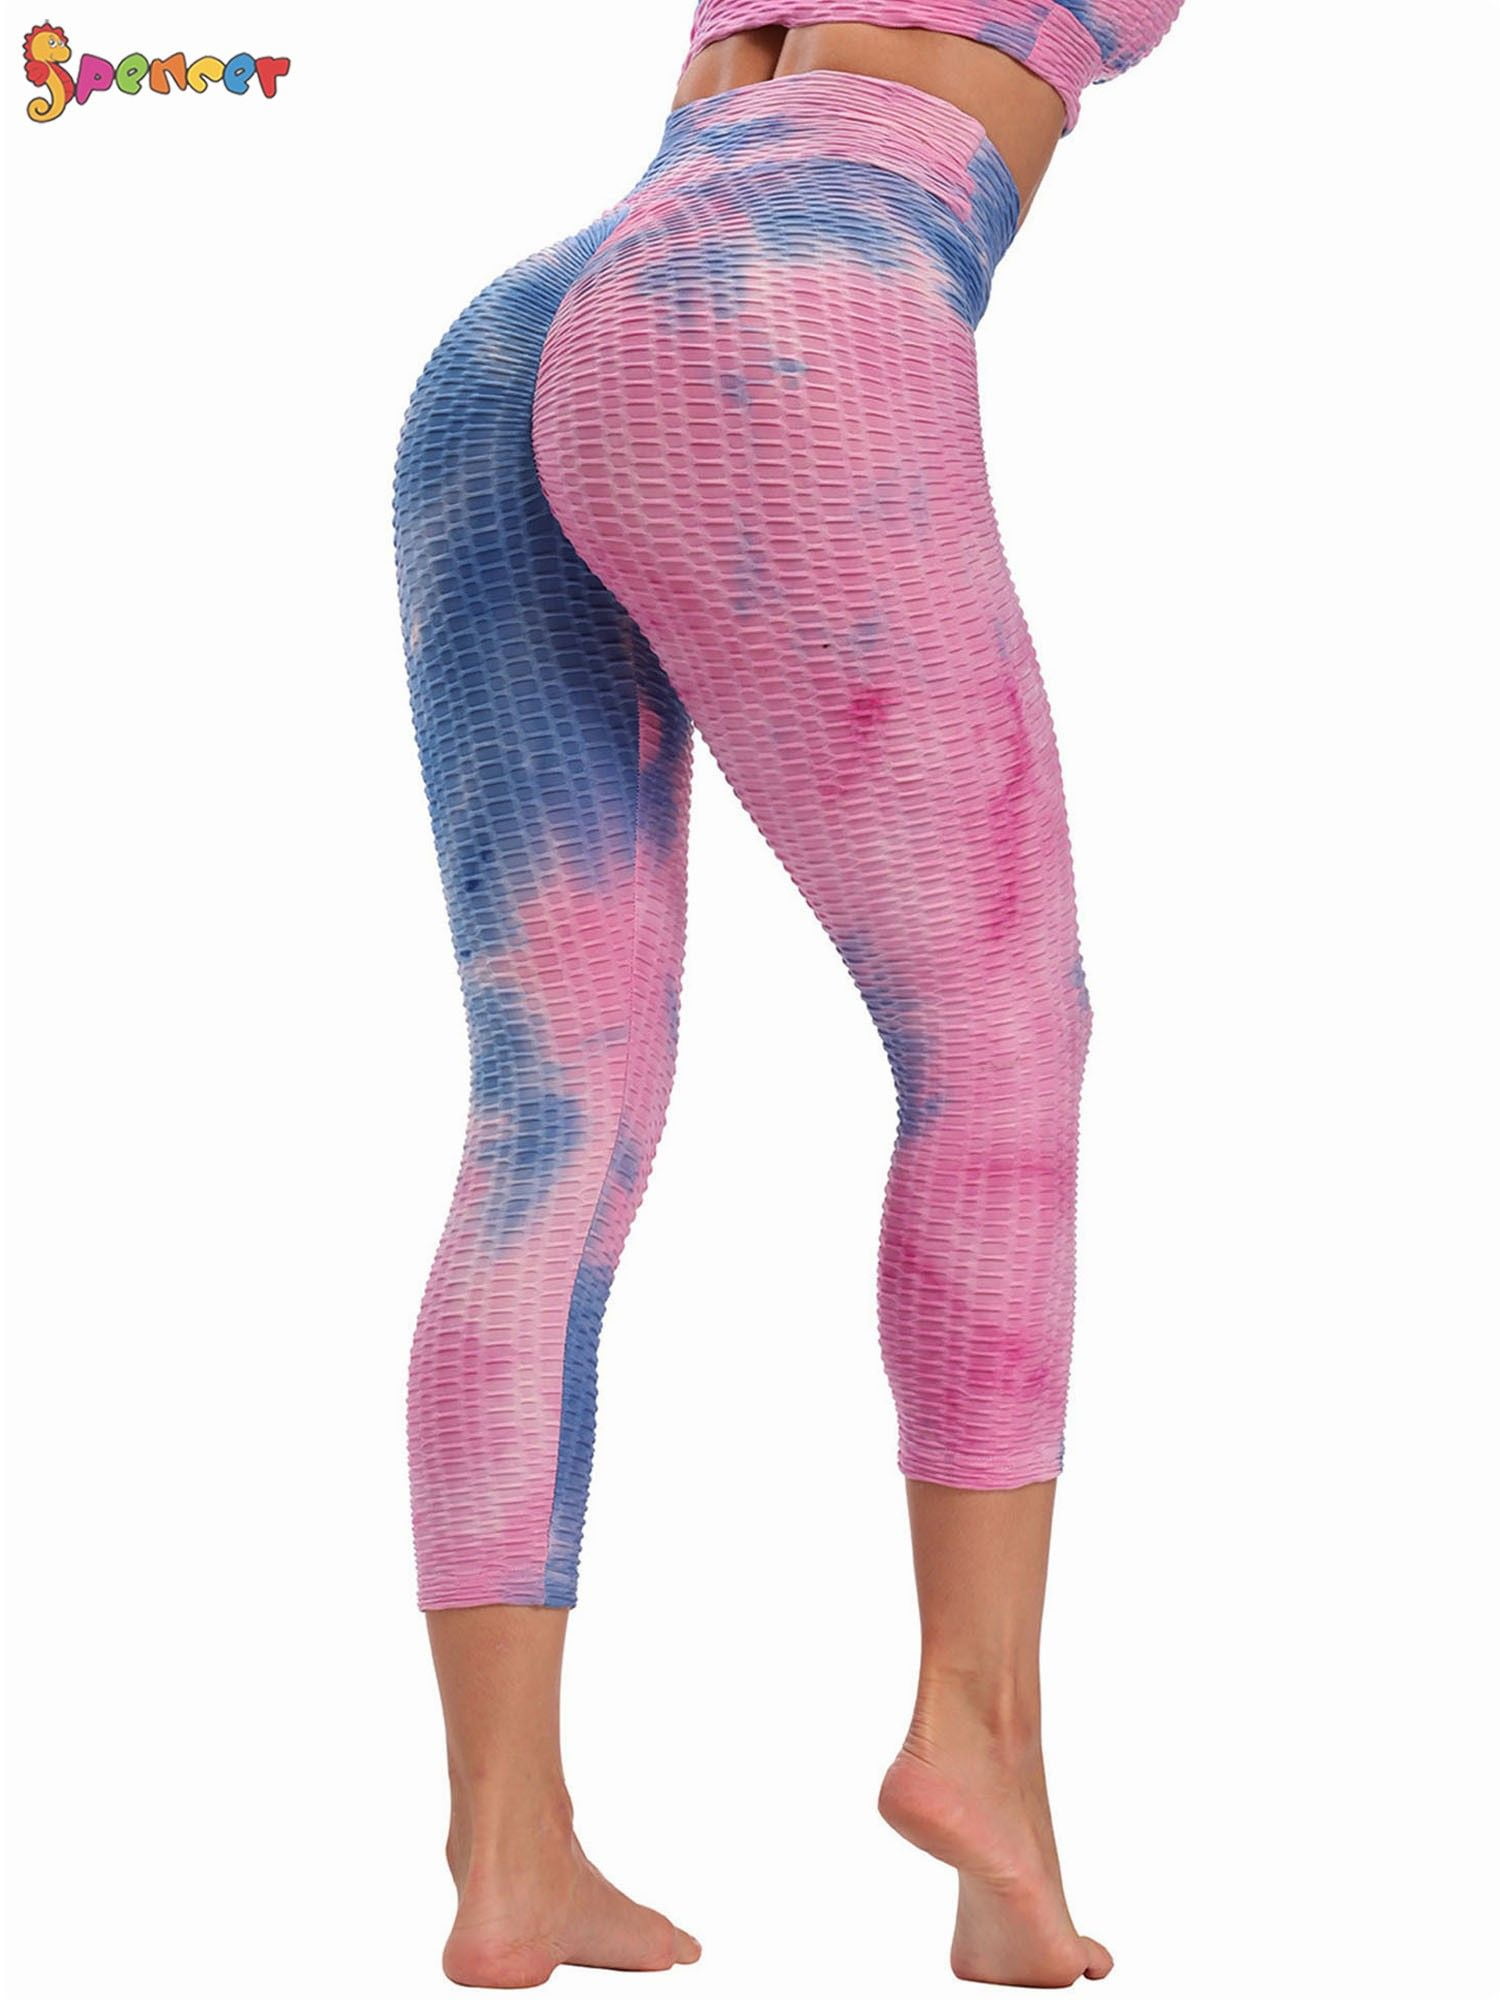 High Waist Tie Dye Butt Lifting Textured Workout Leggings (Pink/Violet)